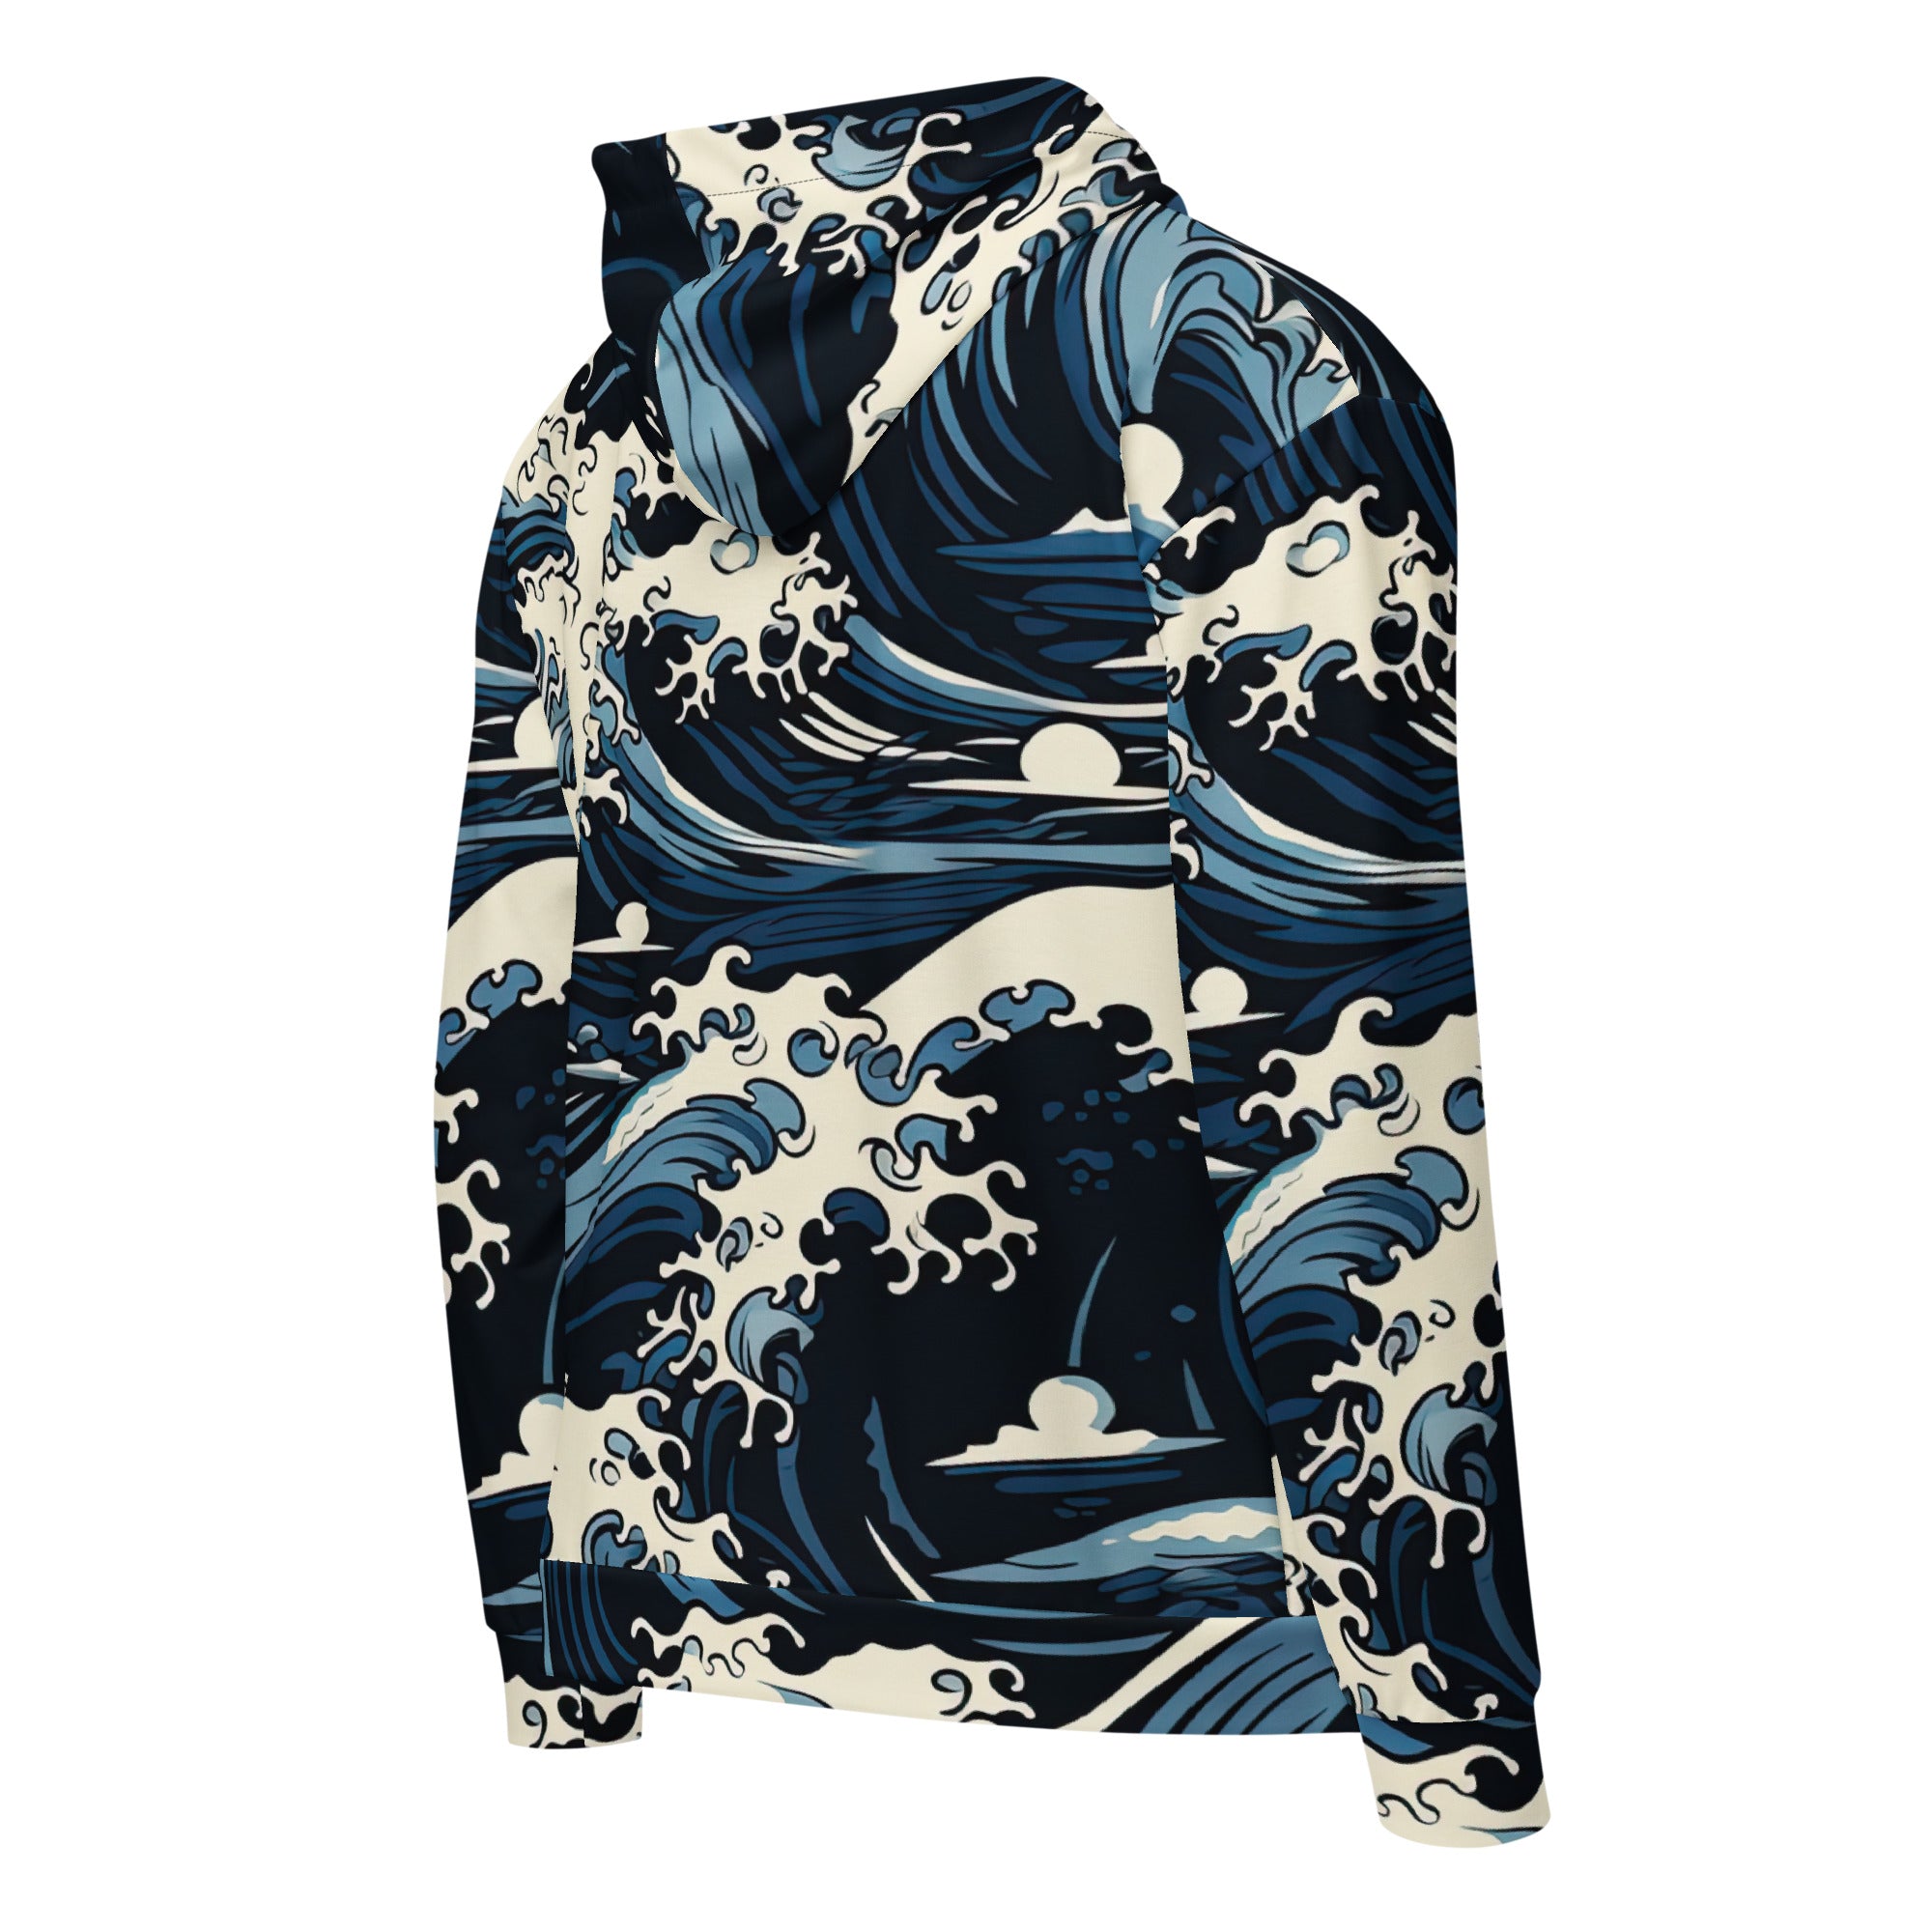 Great Waves zip hoodie